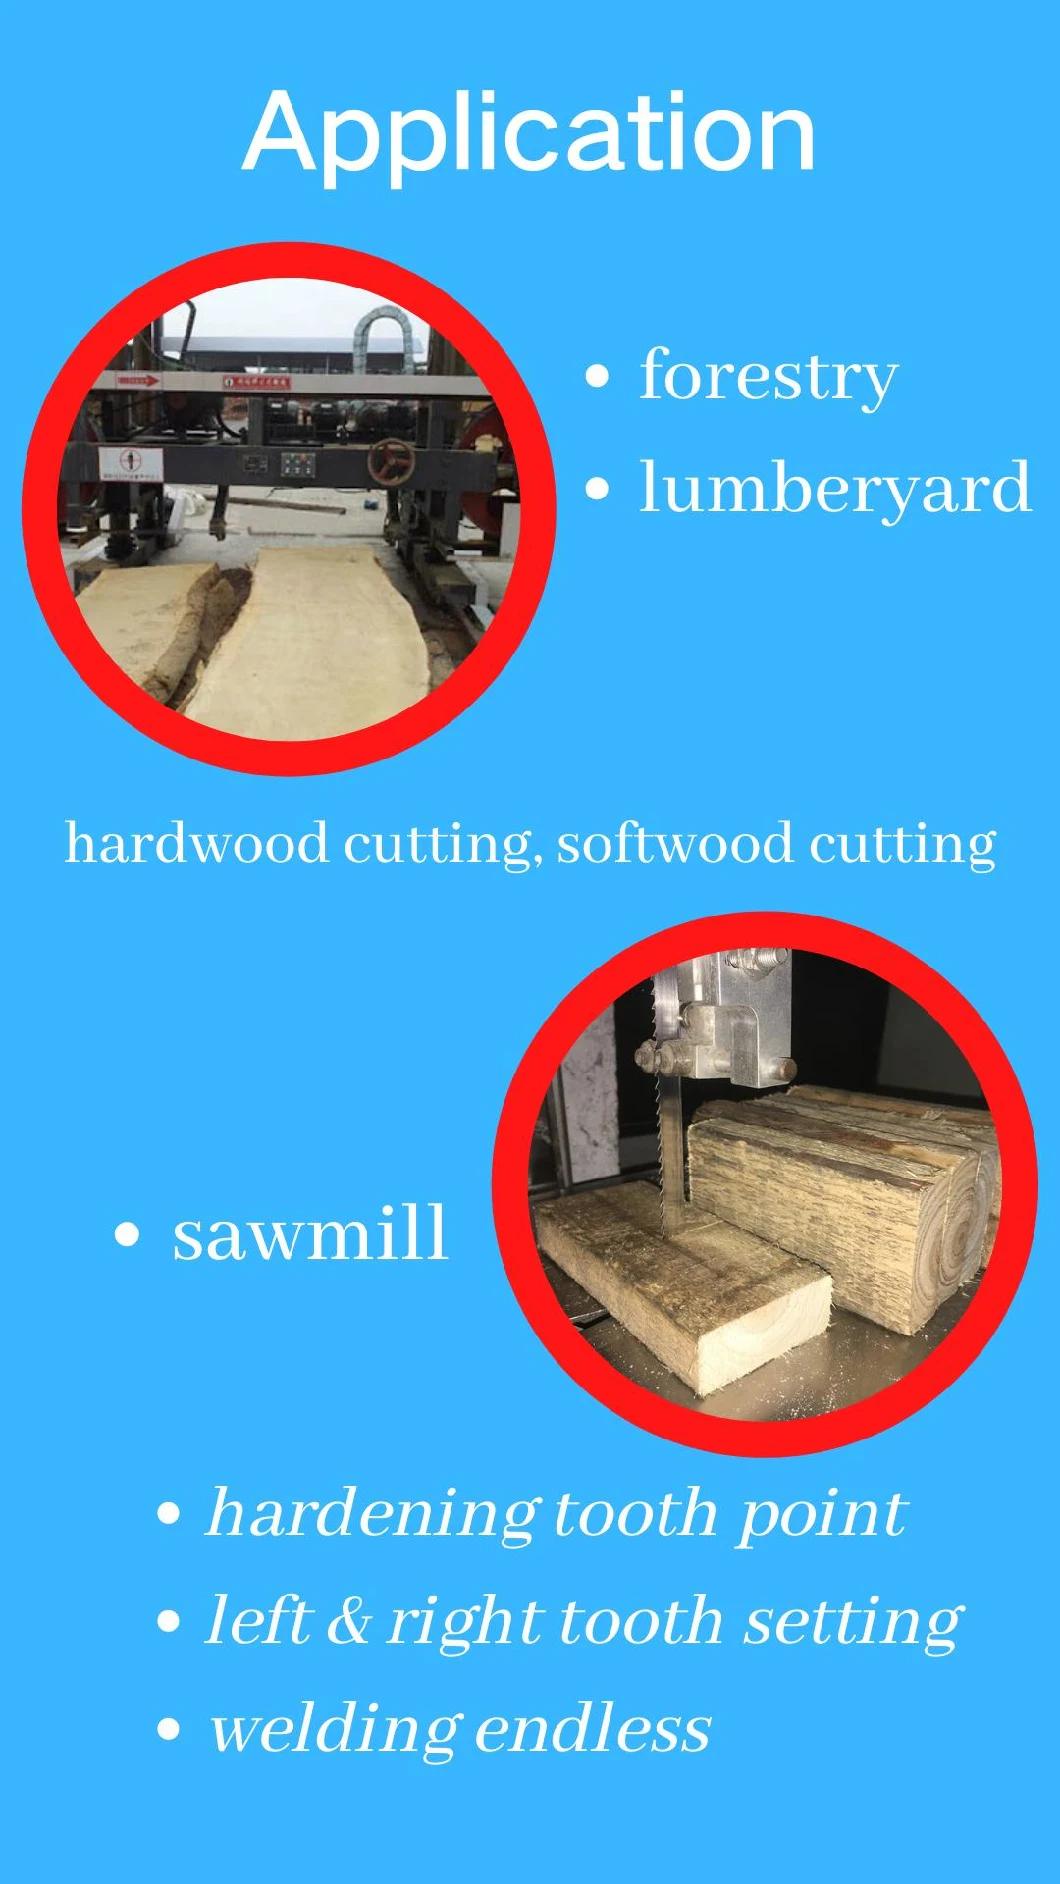 Wood Machines Saw Blade 144 Inch Sawmill Bandsaw Blade Wood Cut